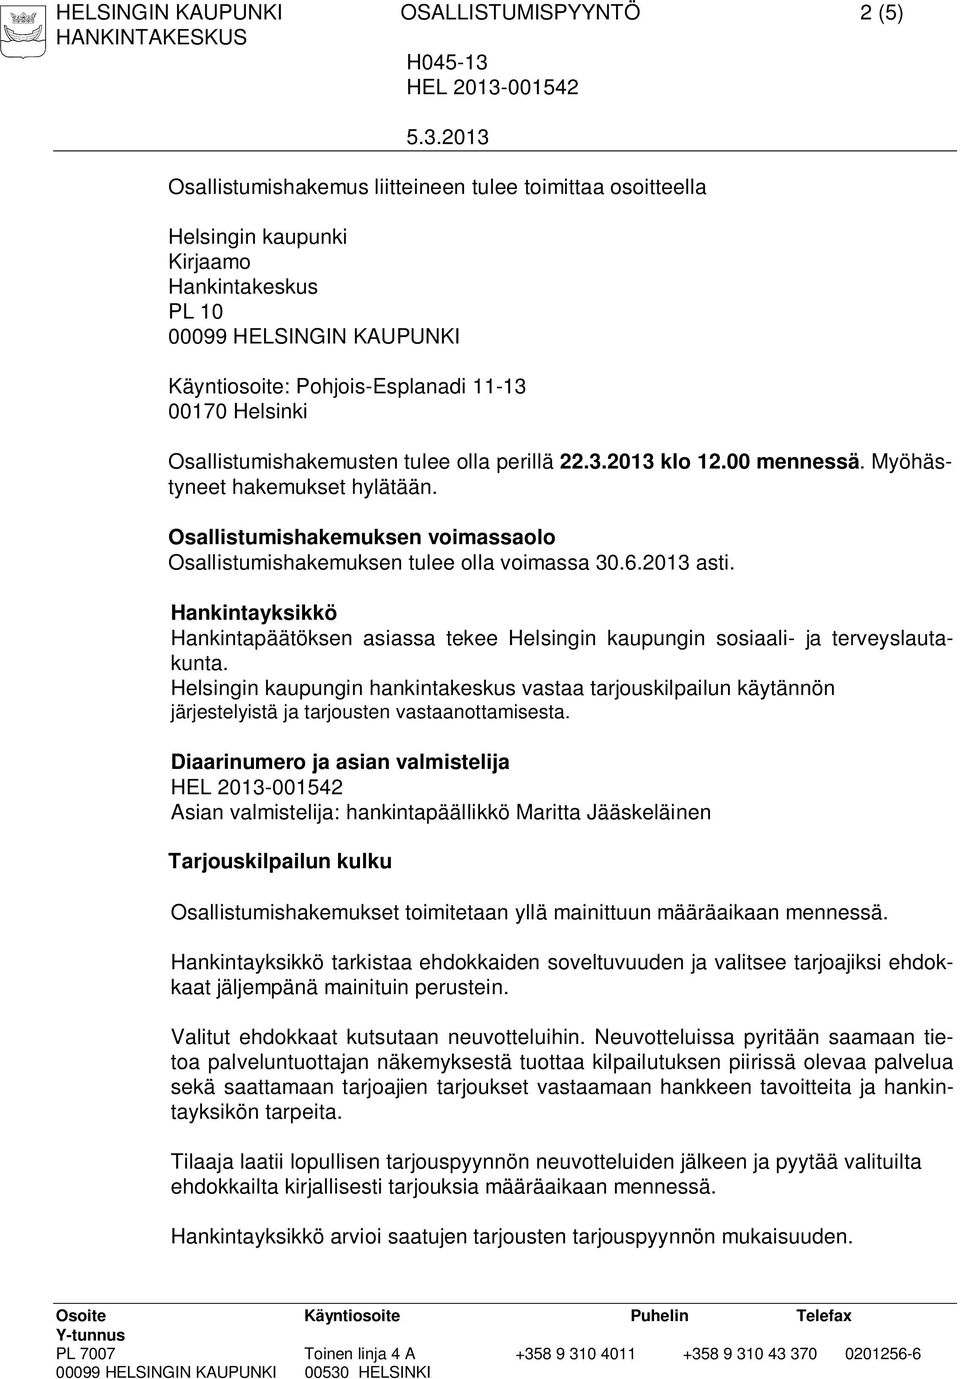 Osallistumishakemuksen voimassaolo Osallistumishakemuksen tulee olla voimassa 30.6.2013 asti. Hankintayksikkö Hankintapäätöksen asiassa tekee Helsingin kaupungin sosiaali- ja terveyslautakunta.